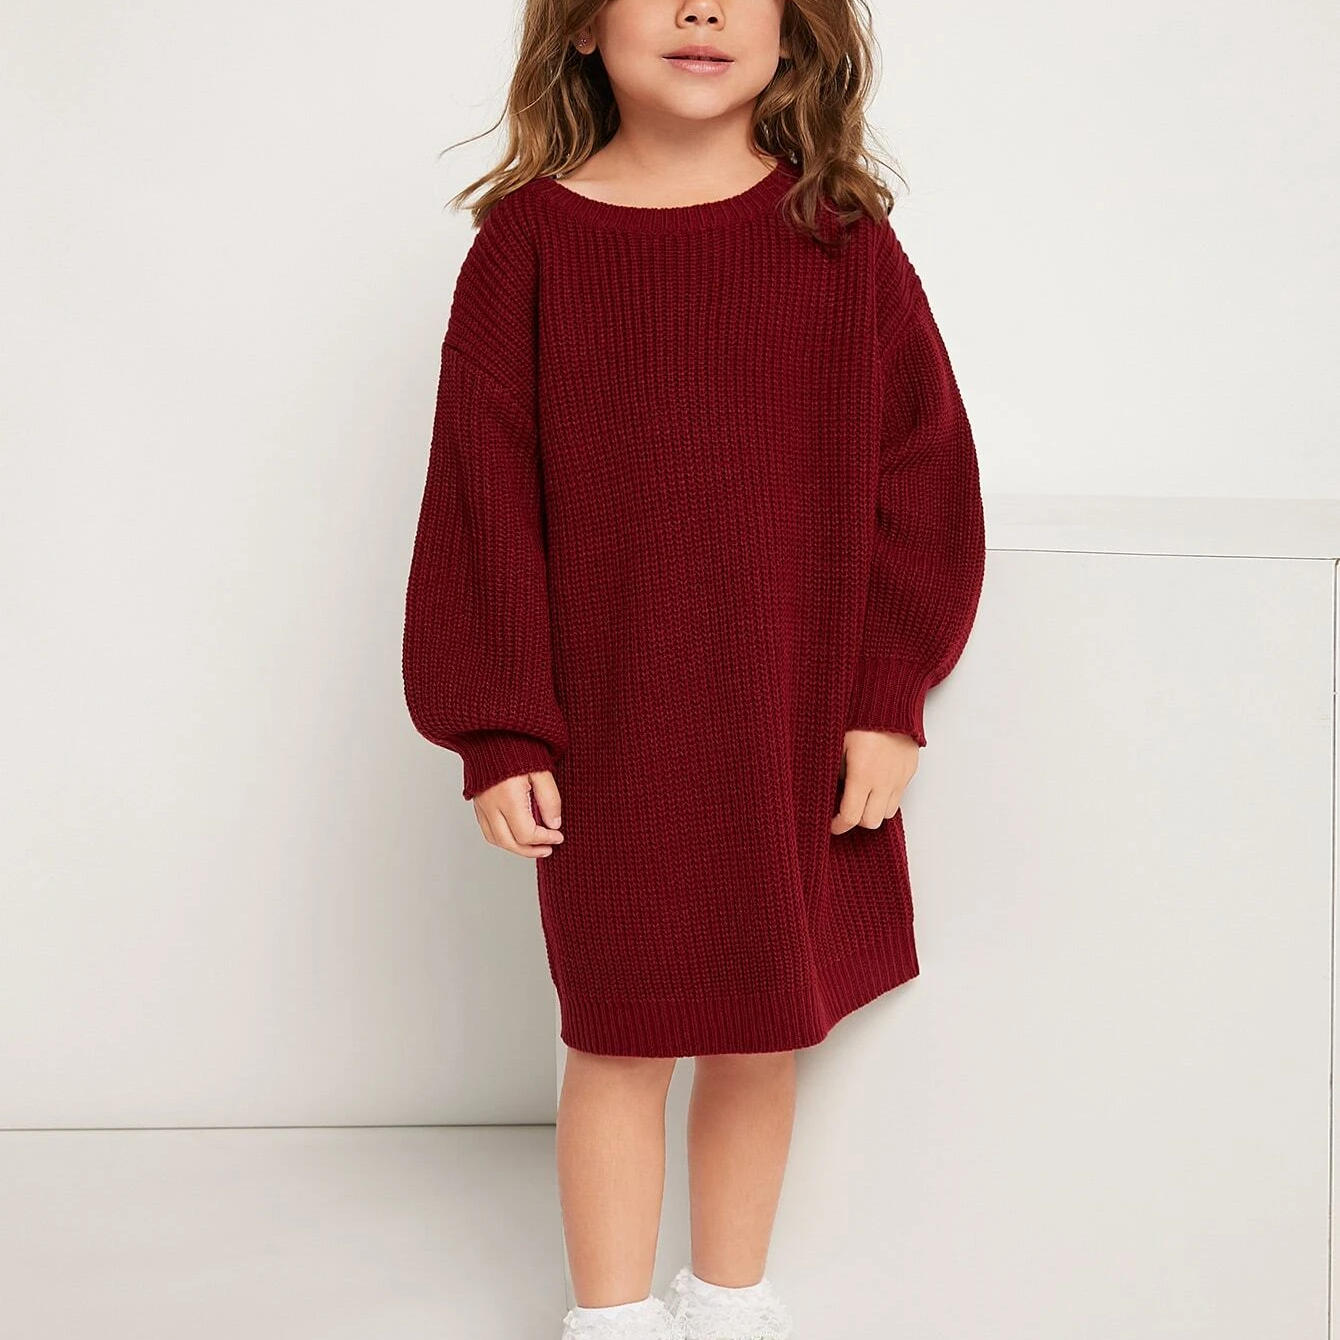 Hersteller von Pullovern für Mädchenkleider